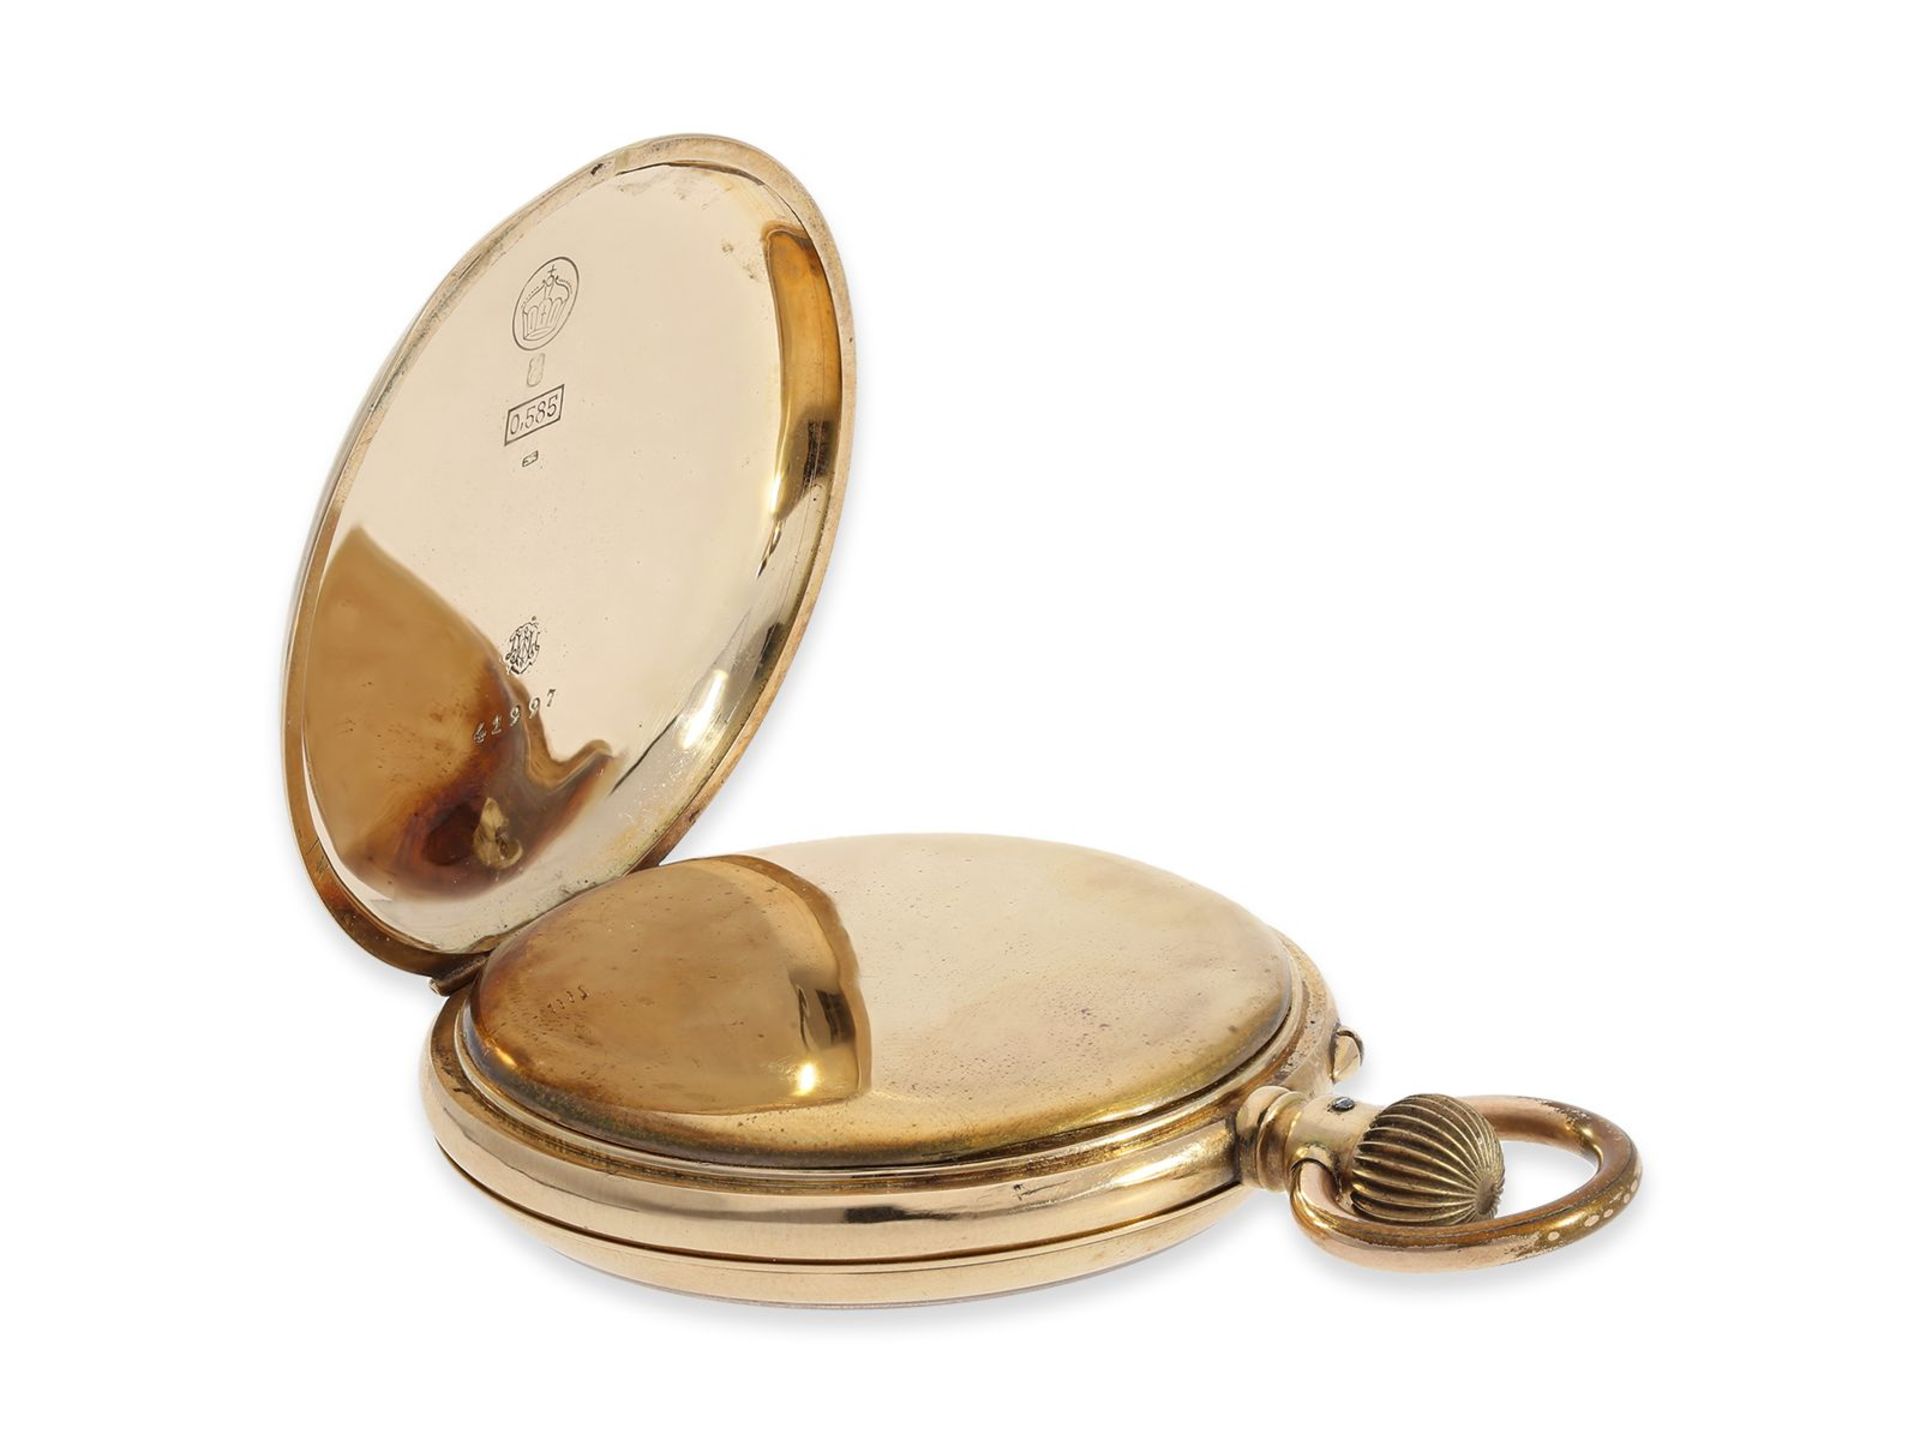 Taschenuhr: interessante Sammleruhr für IWC Sammler, sehr frühe goldene Taschenuhr No.31918, ca. - Image 3 of 5